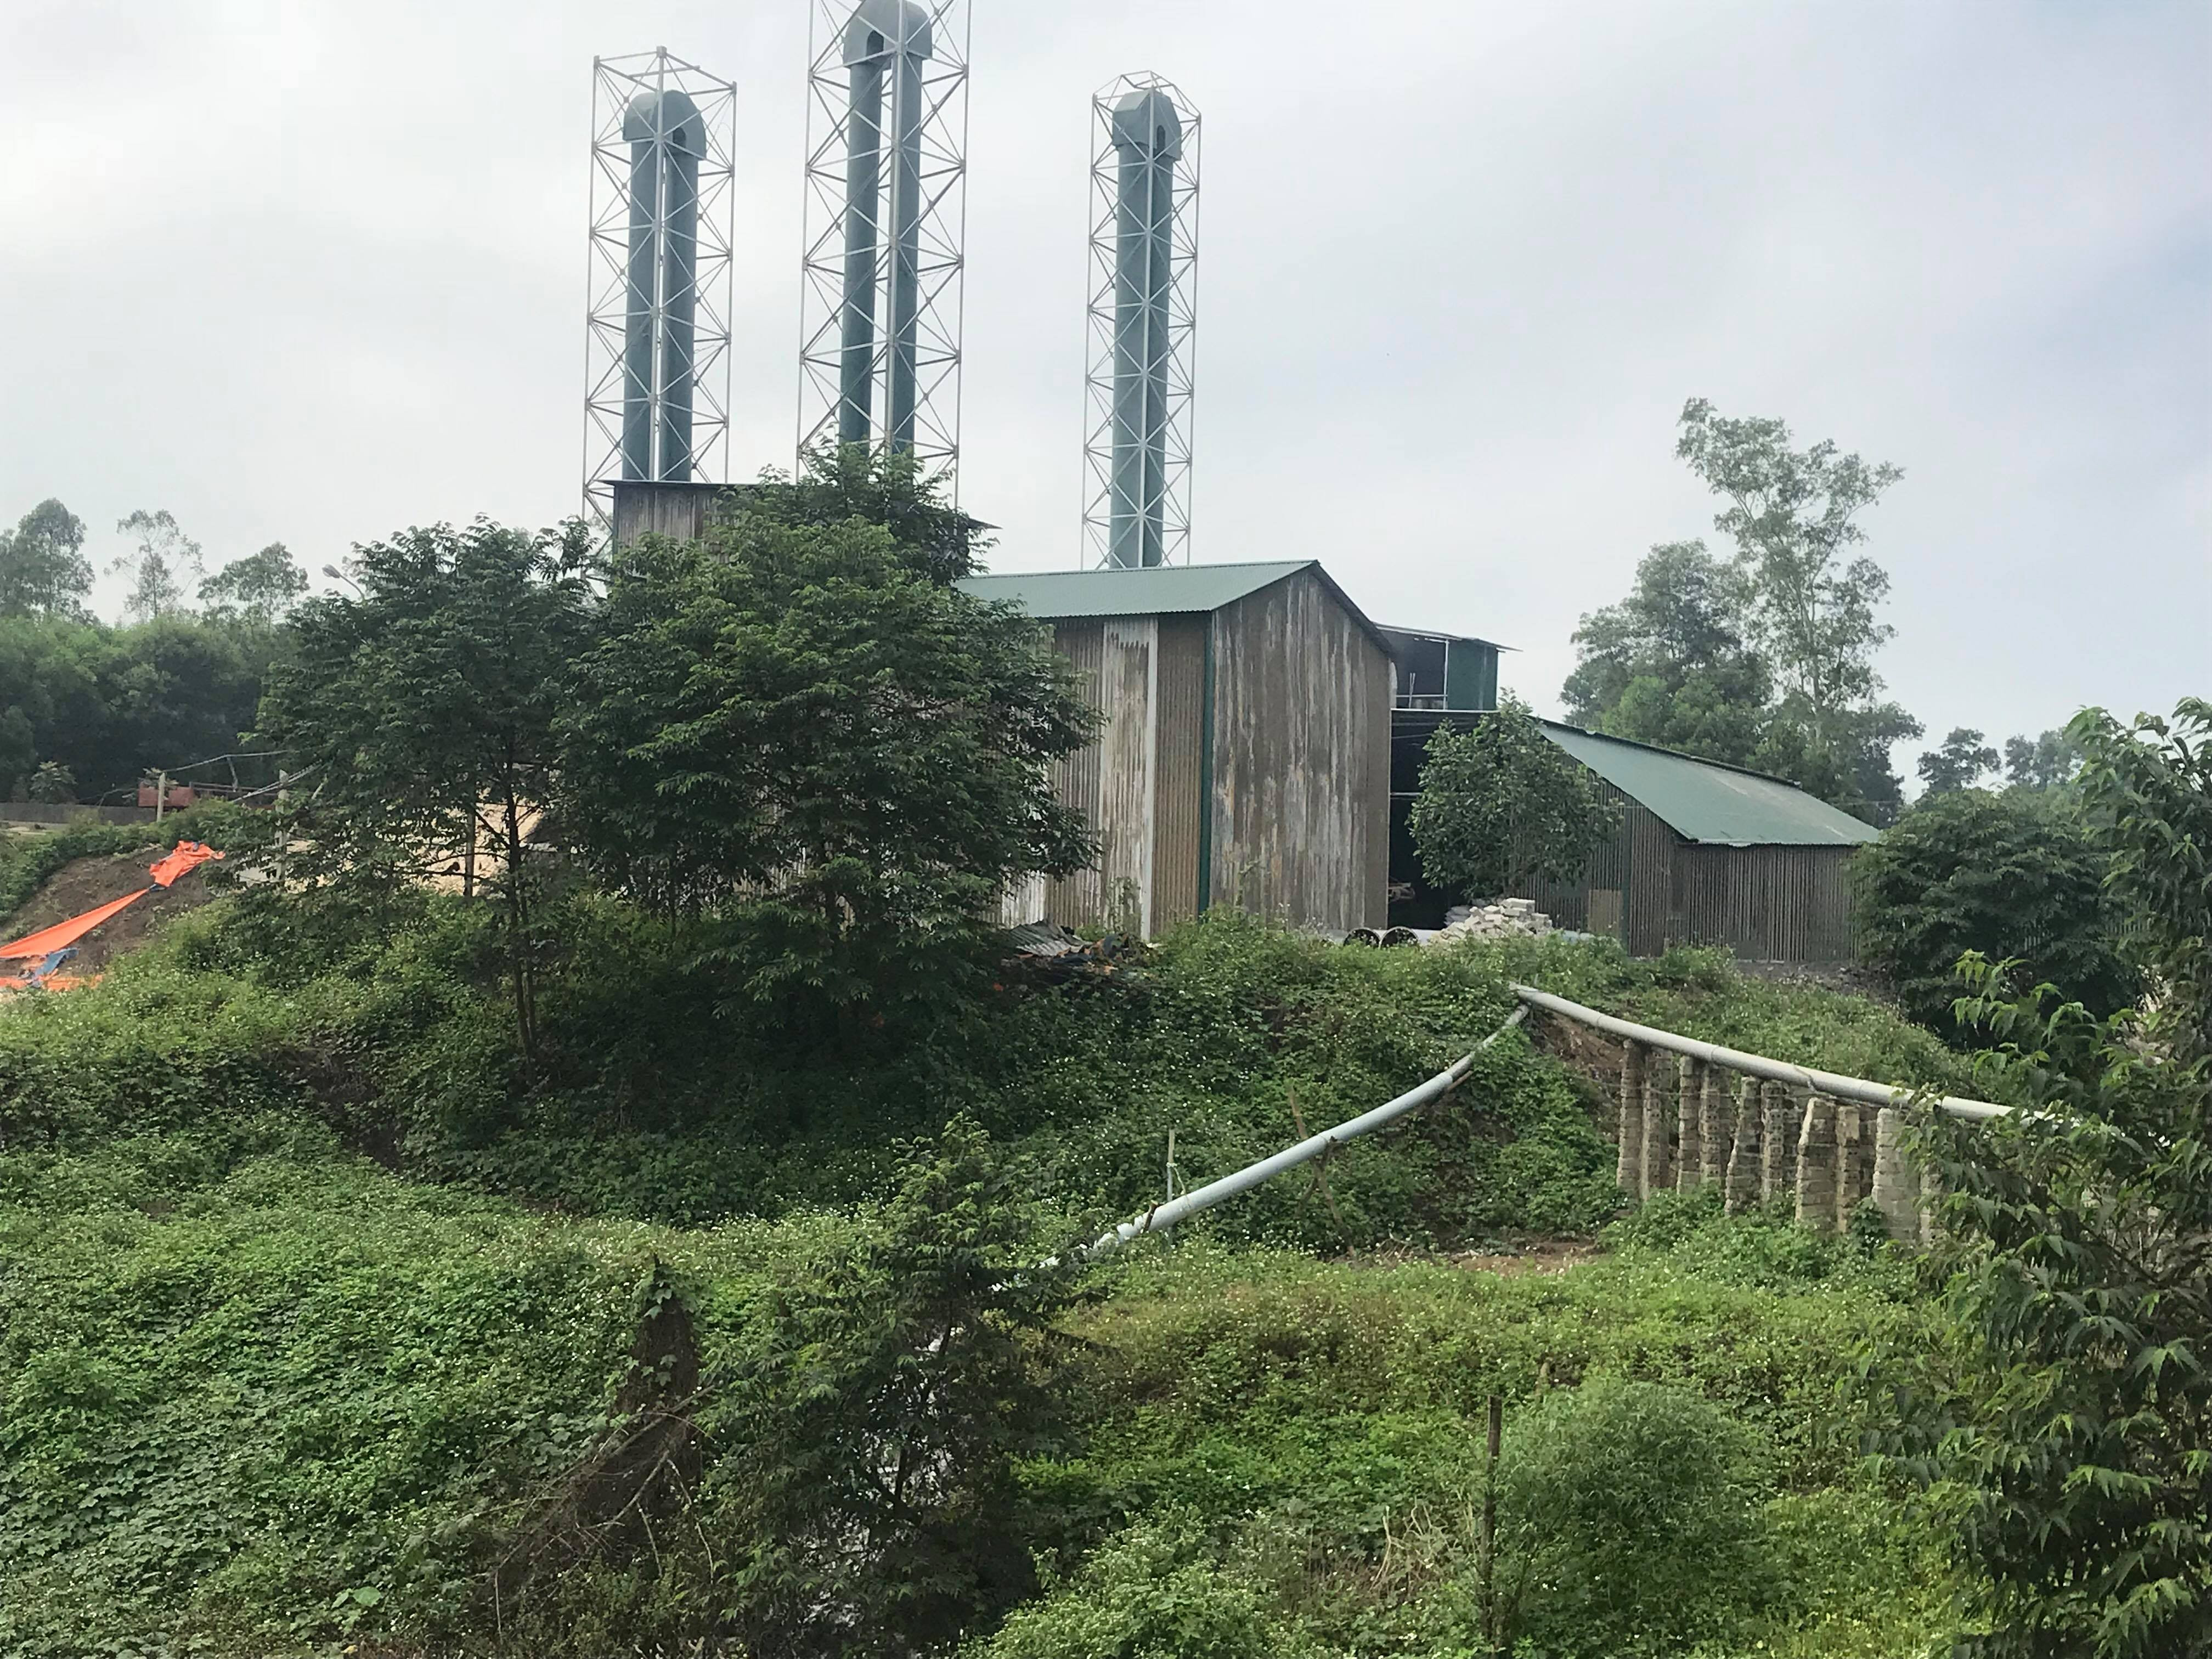 Xưởng chế biến tinh bột sắn của gia đình ông Nguyễn Hồng ở xóm Lĩnh Khánh, xã Nghĩa Khánh.